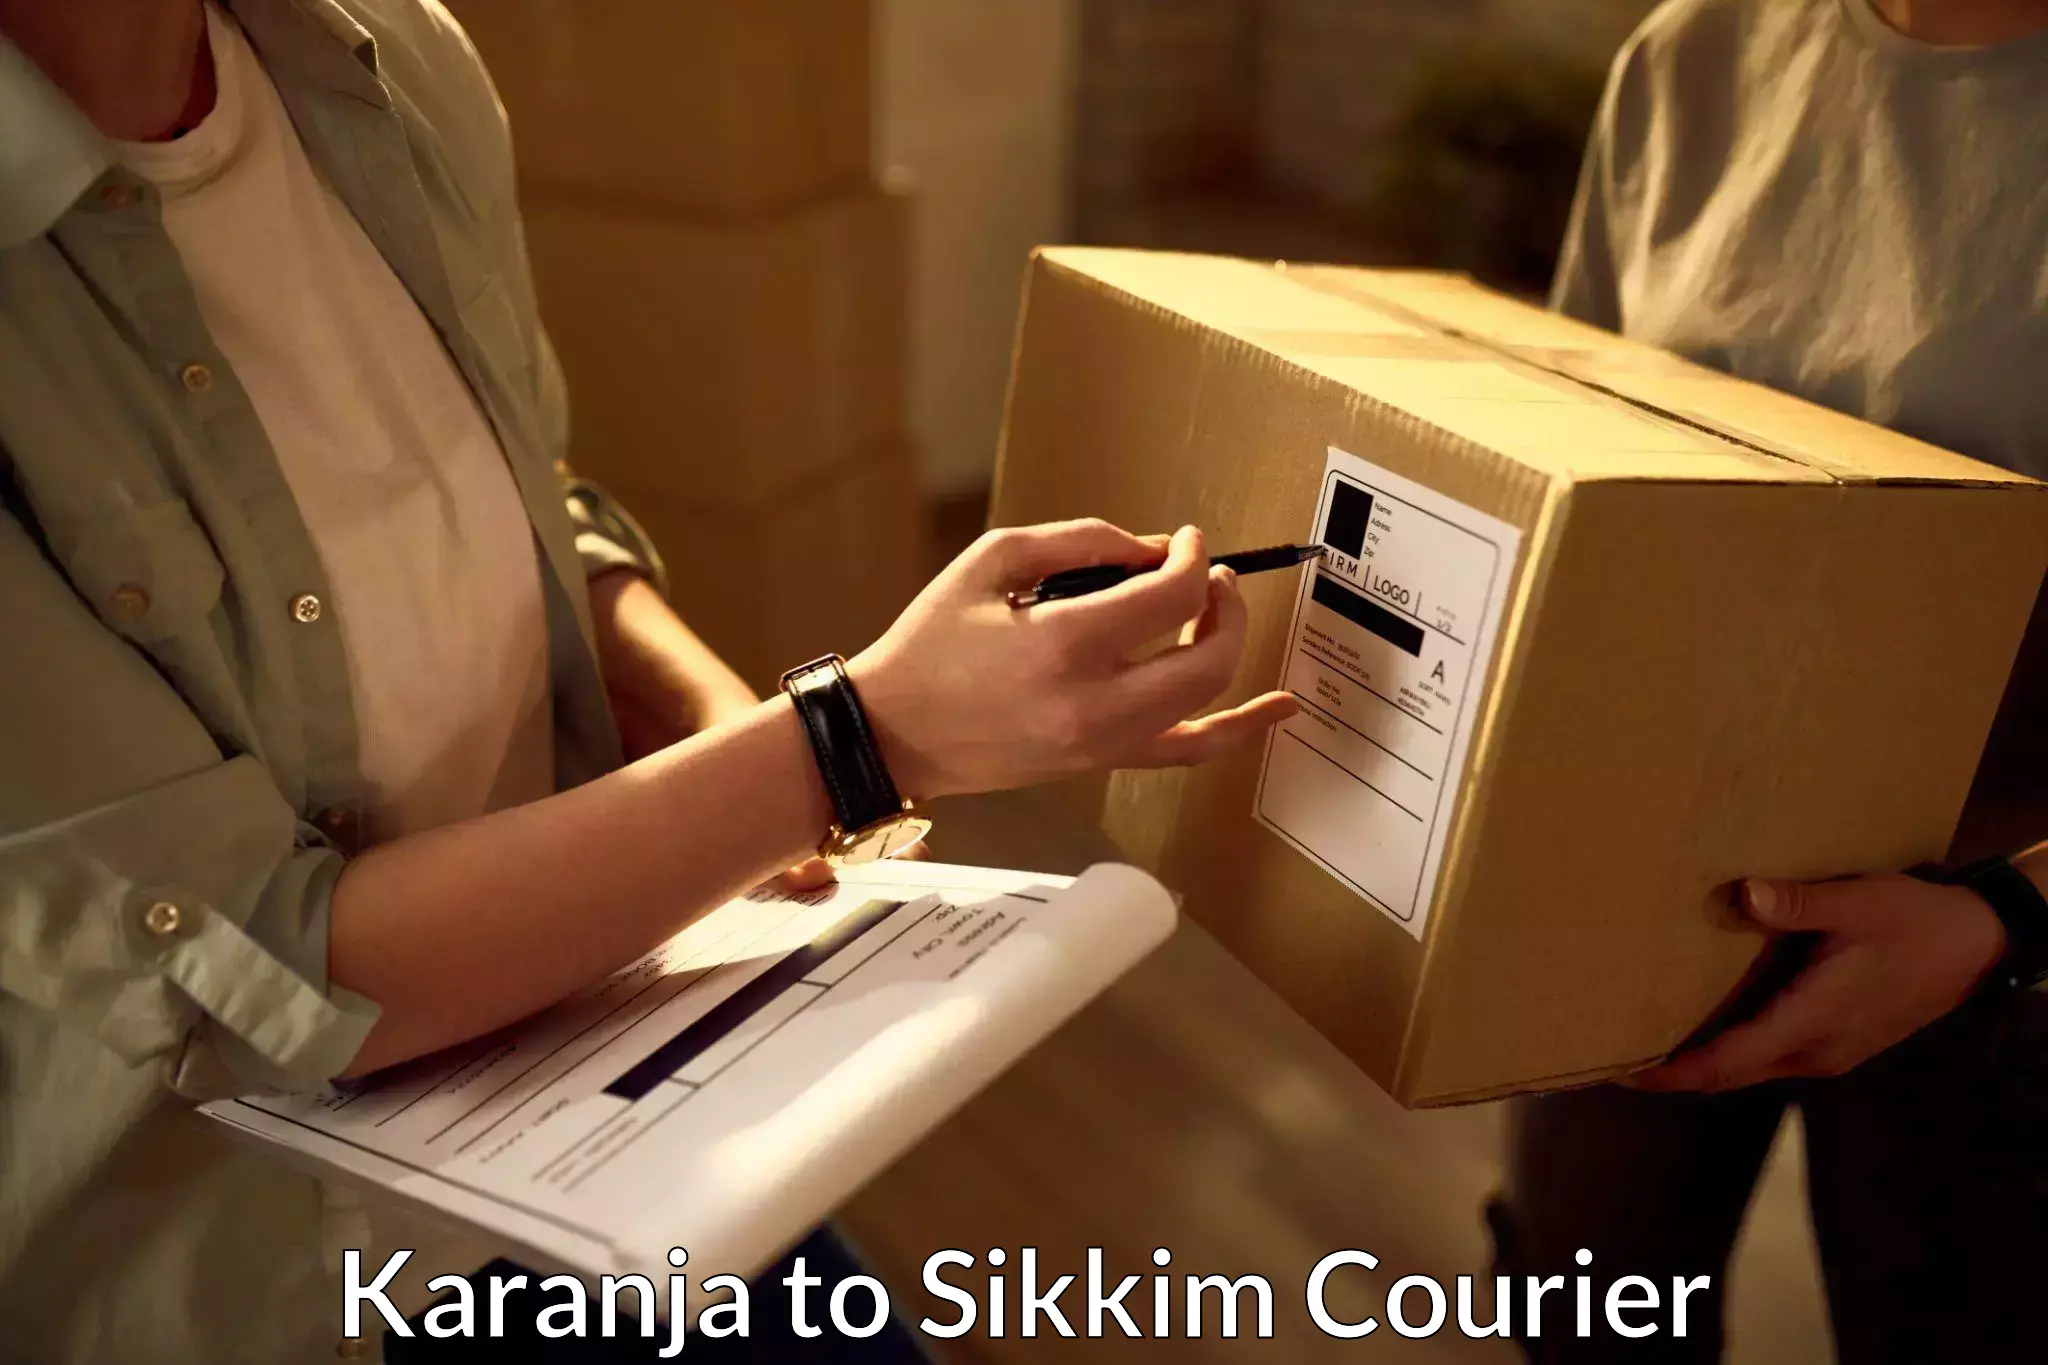 Express package handling Karanja to Sikkim